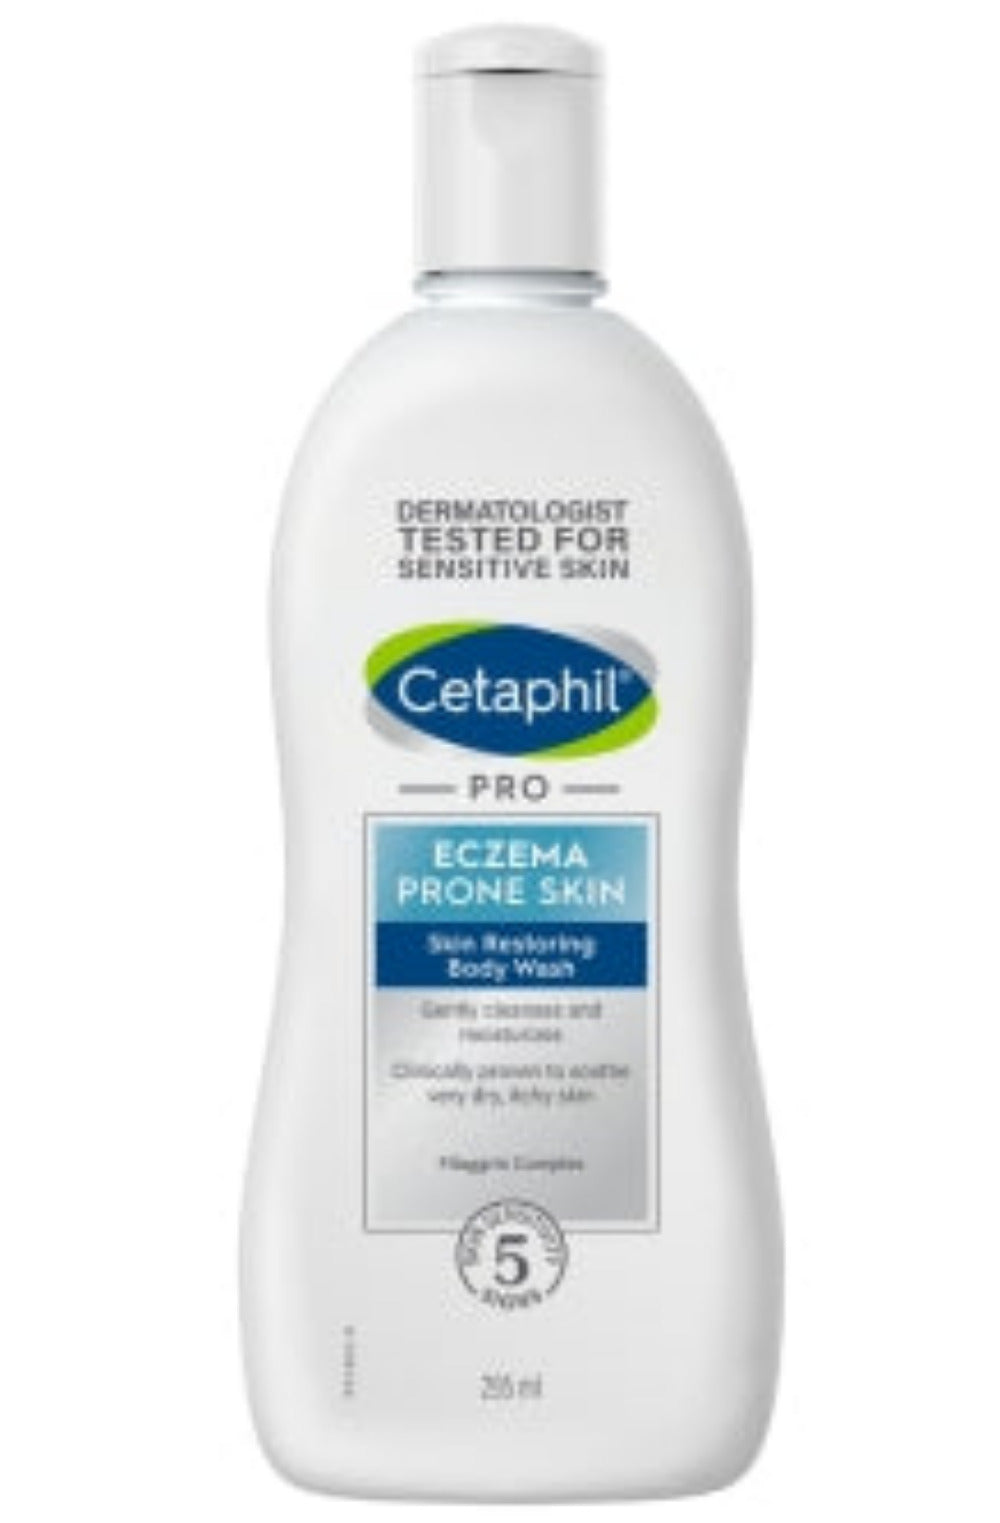 Cetaphil Pro Eczema Prone Skin Body Wash - 295 ml